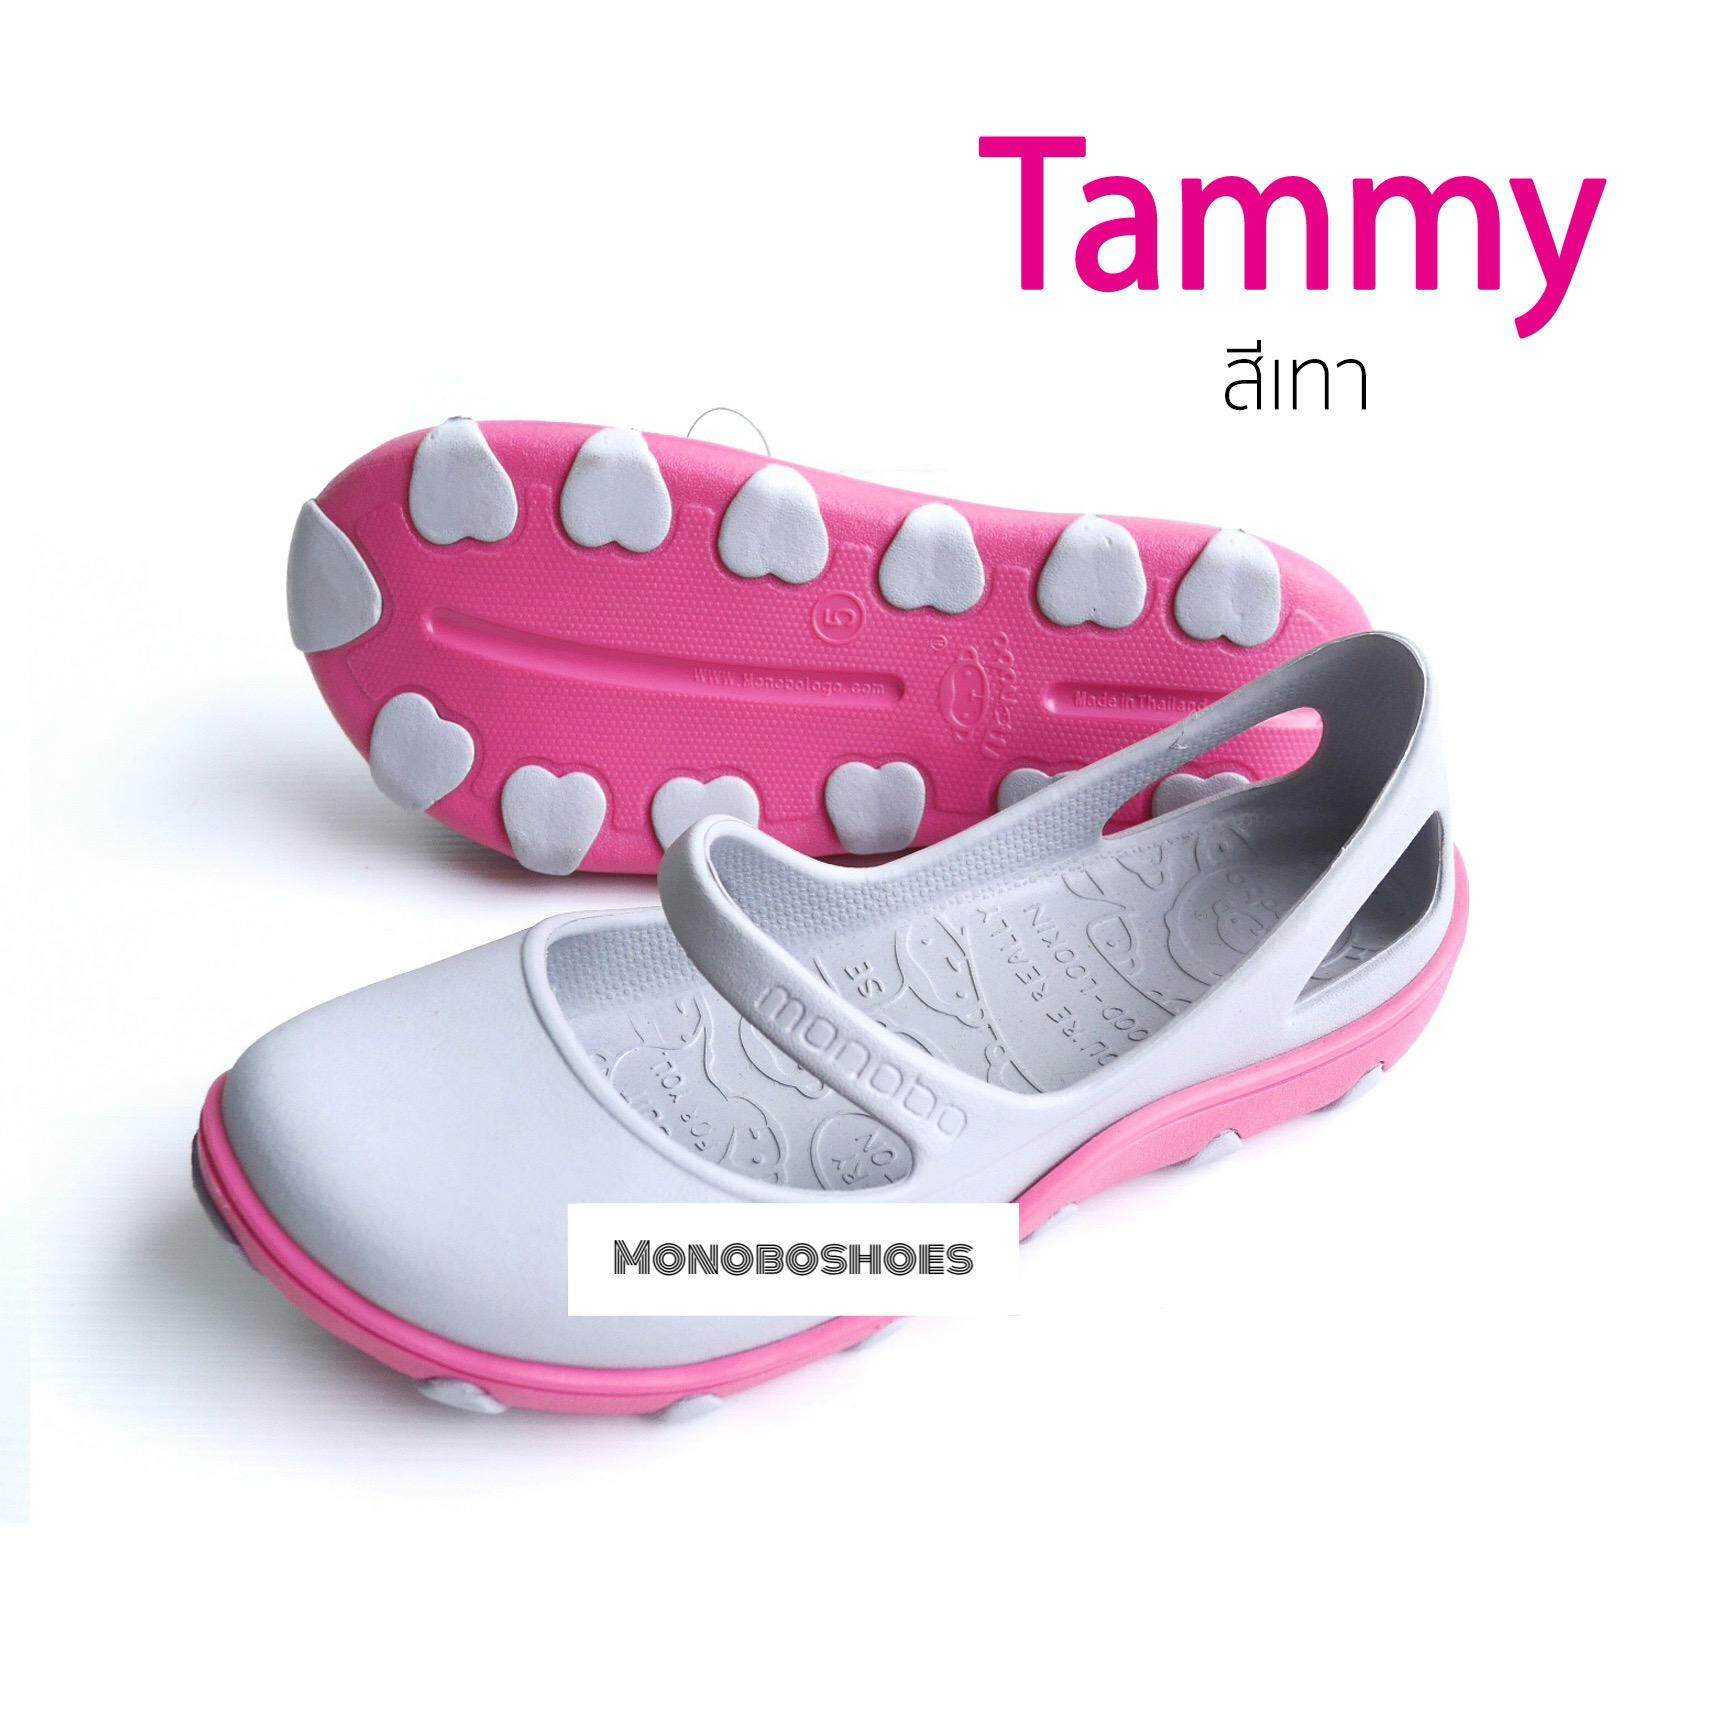 รองเท้า Monobo รุ่น Tammy ของแท้ 100%